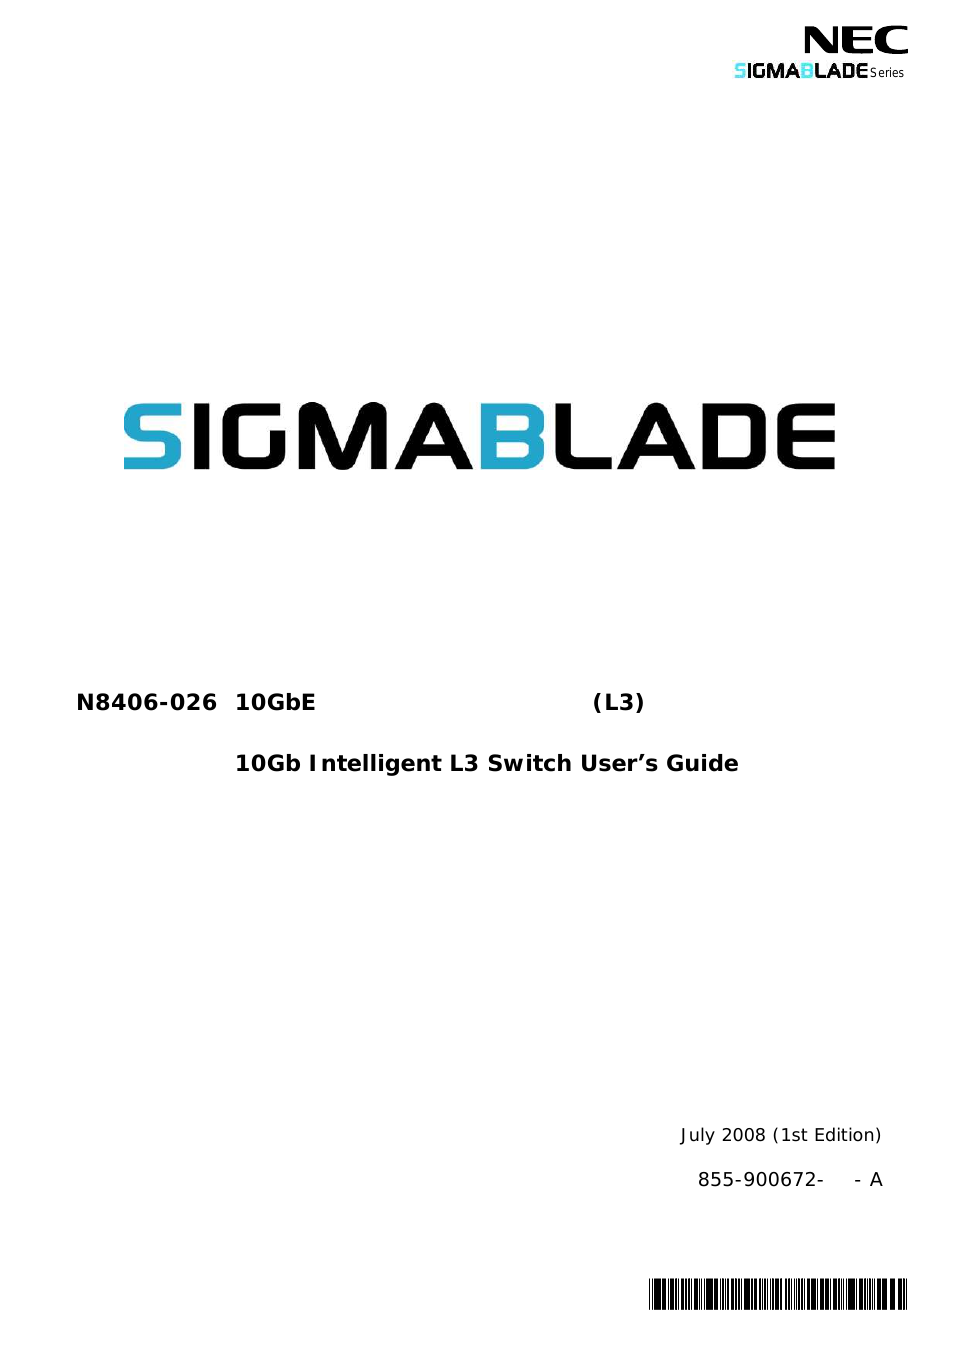 SigmaBlade N8406-026